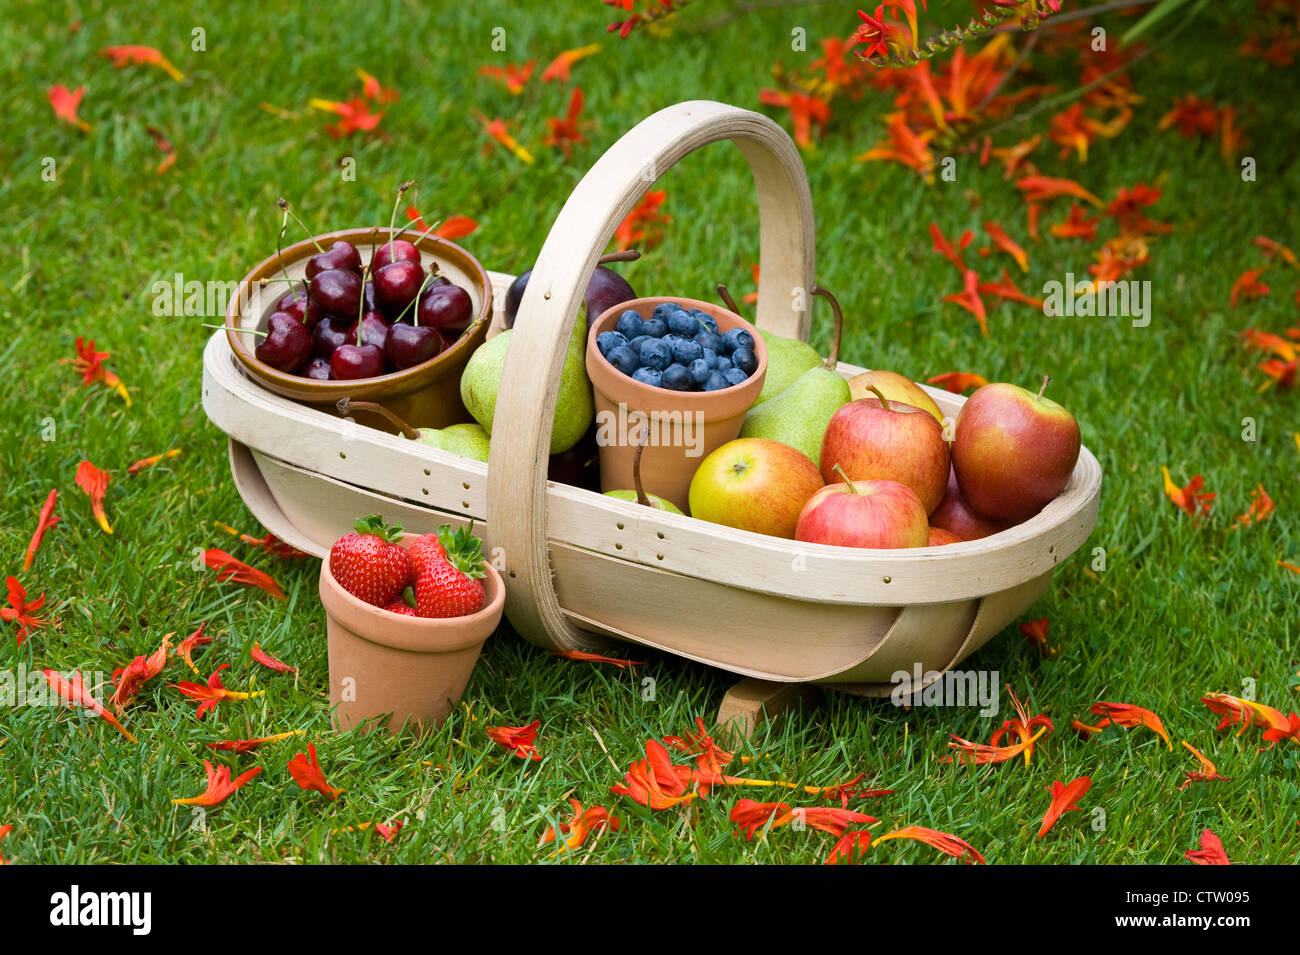 Trug der britischen Sommer geerntete Früchte einschließlich: Heidelbeeren, Kirschen, Äpfel, Birnen, Erdbeeren, Pflaumen auf einer Wiese Stockfoto